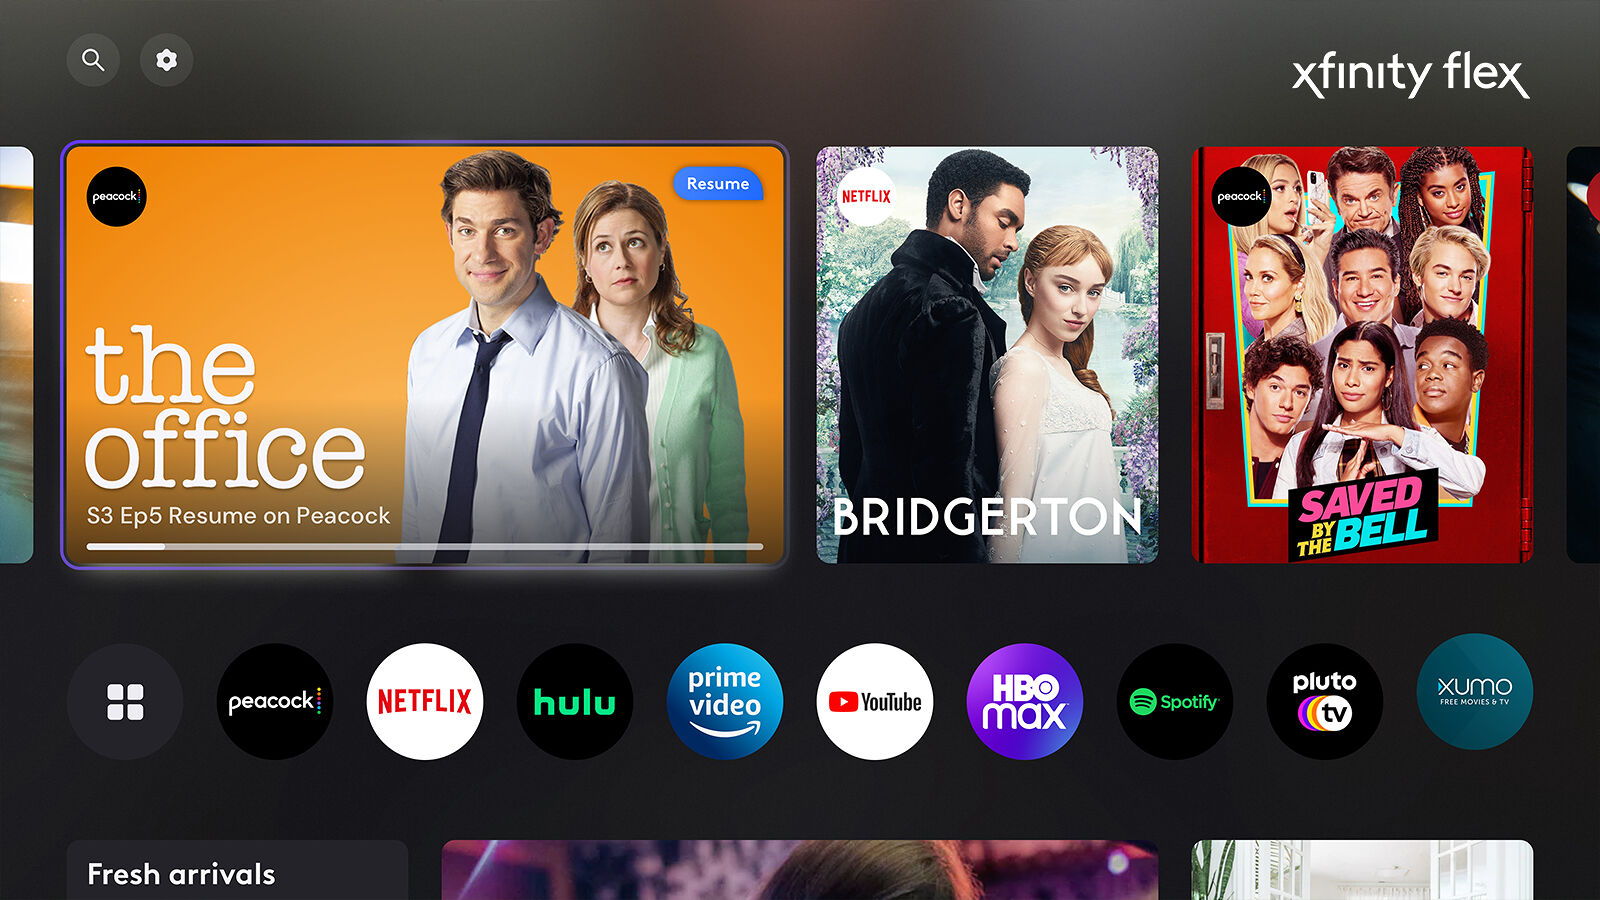 How To Watch Netflix On Xfinity